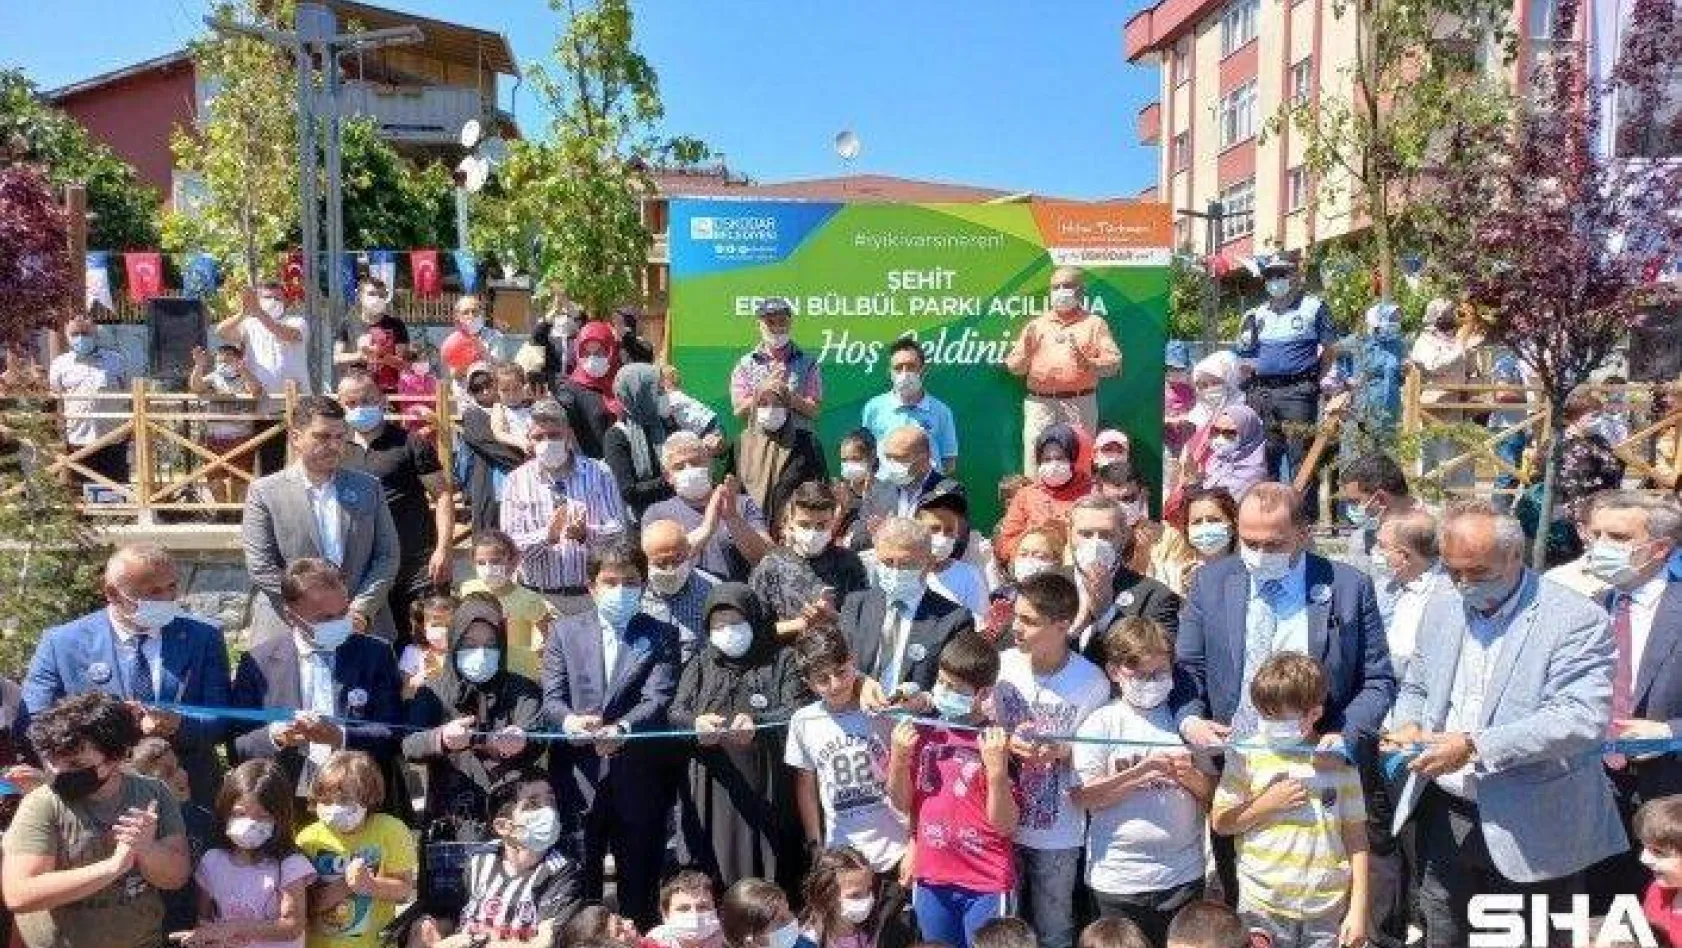 Üsküdar'da yeni açılan parka Şehit Eren Bülbül'ün adı verildi